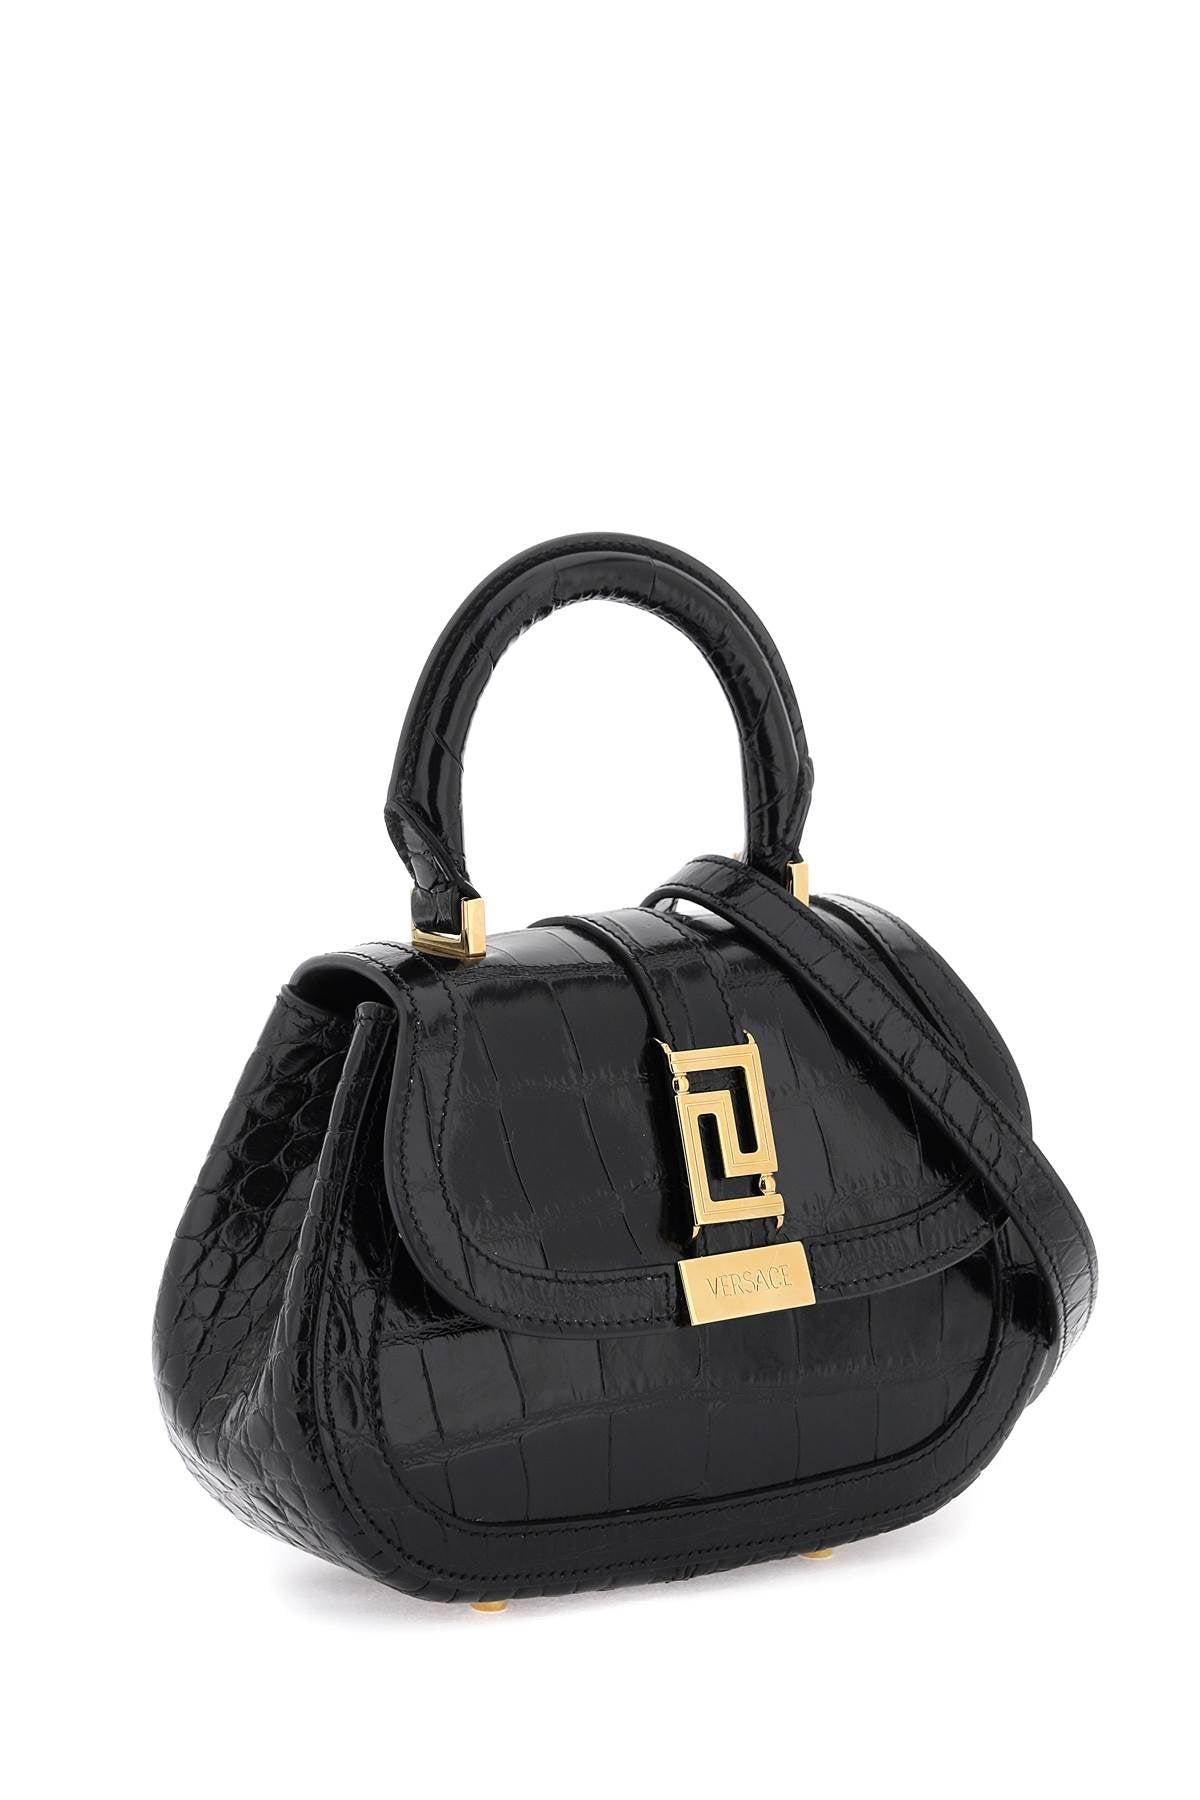 Versace Greca Goddes Mini Bag in Black